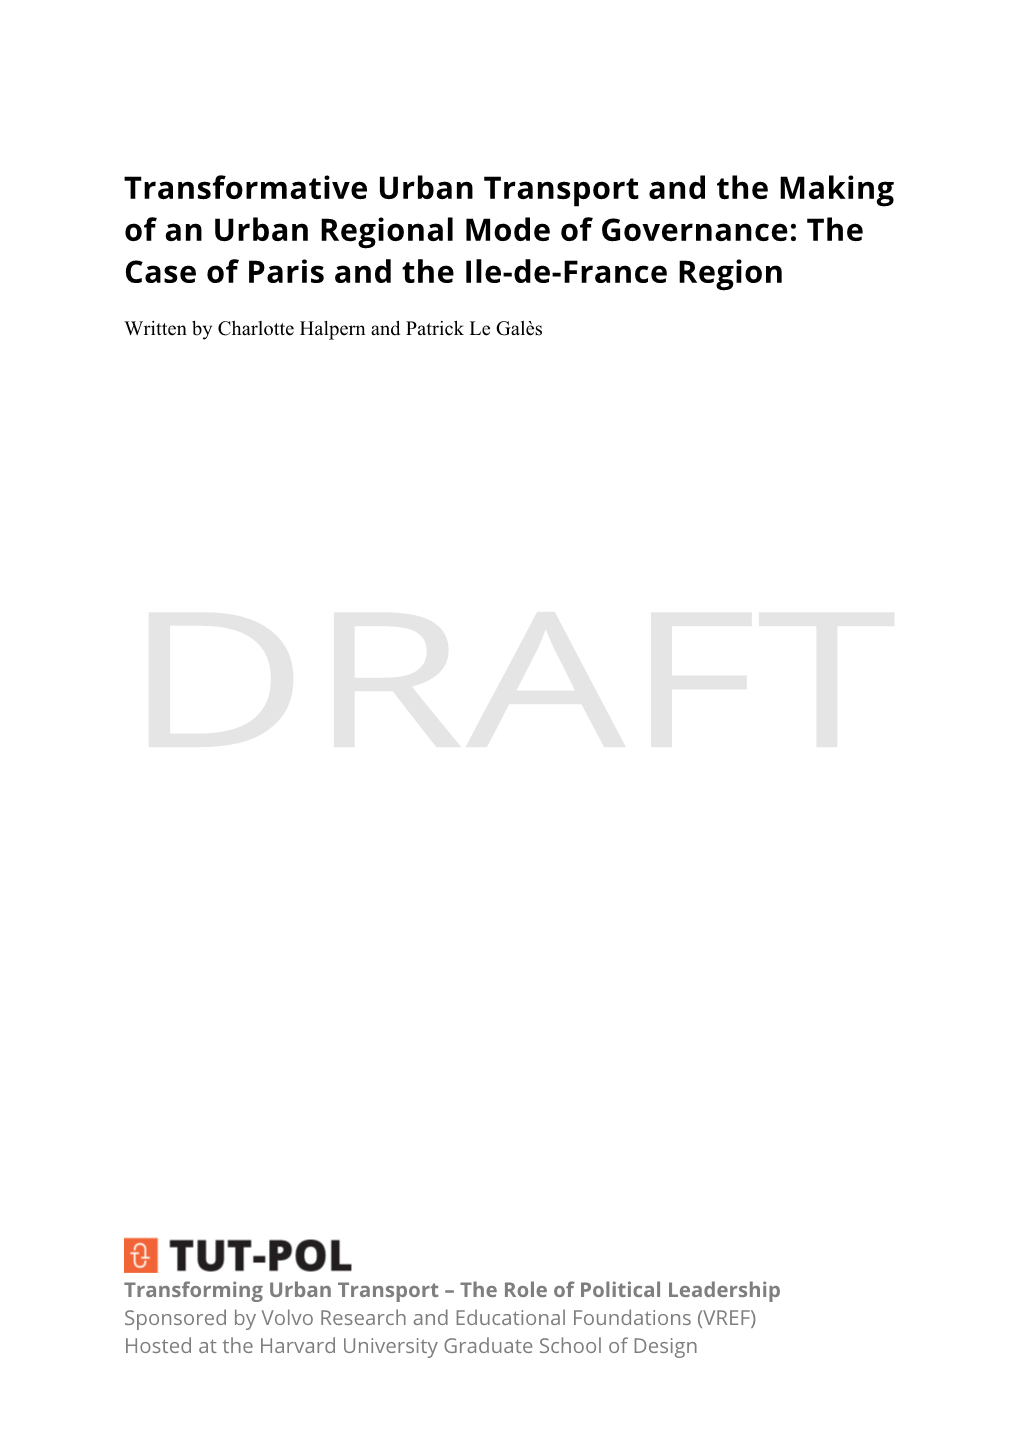 The Case of Paris and the Ile-De-France Region